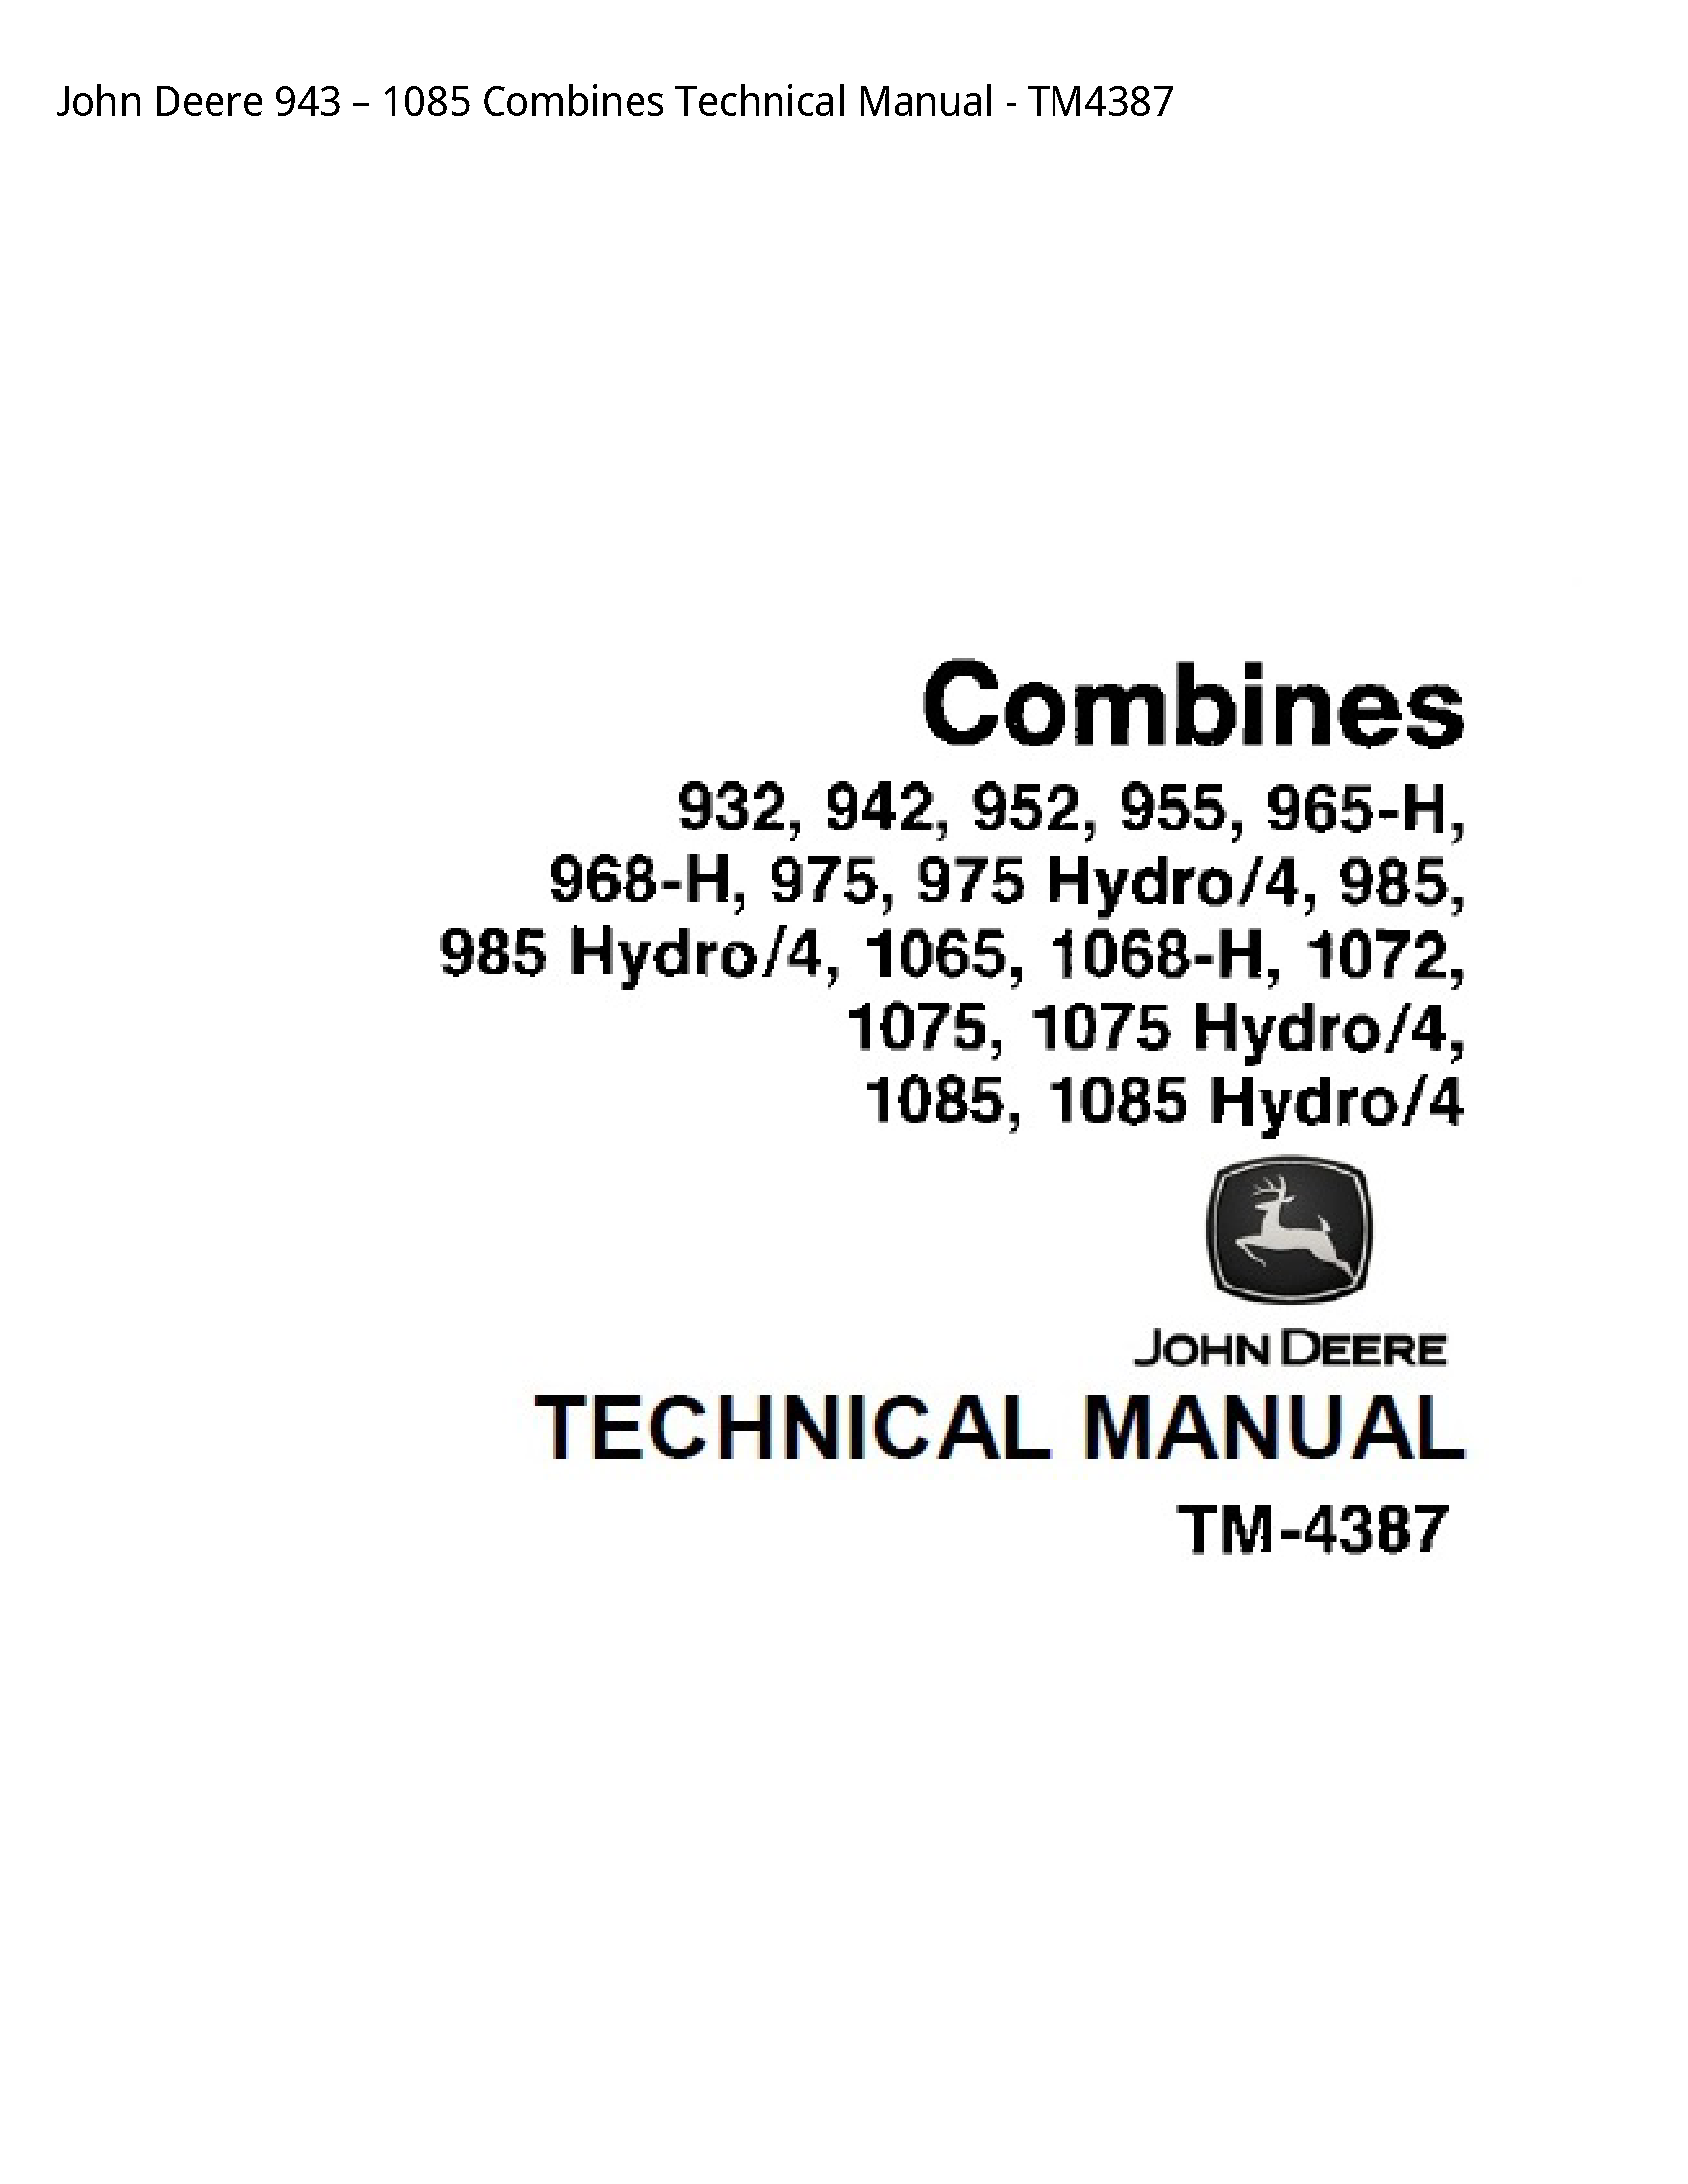 John Deere 943 Combines Technical manual